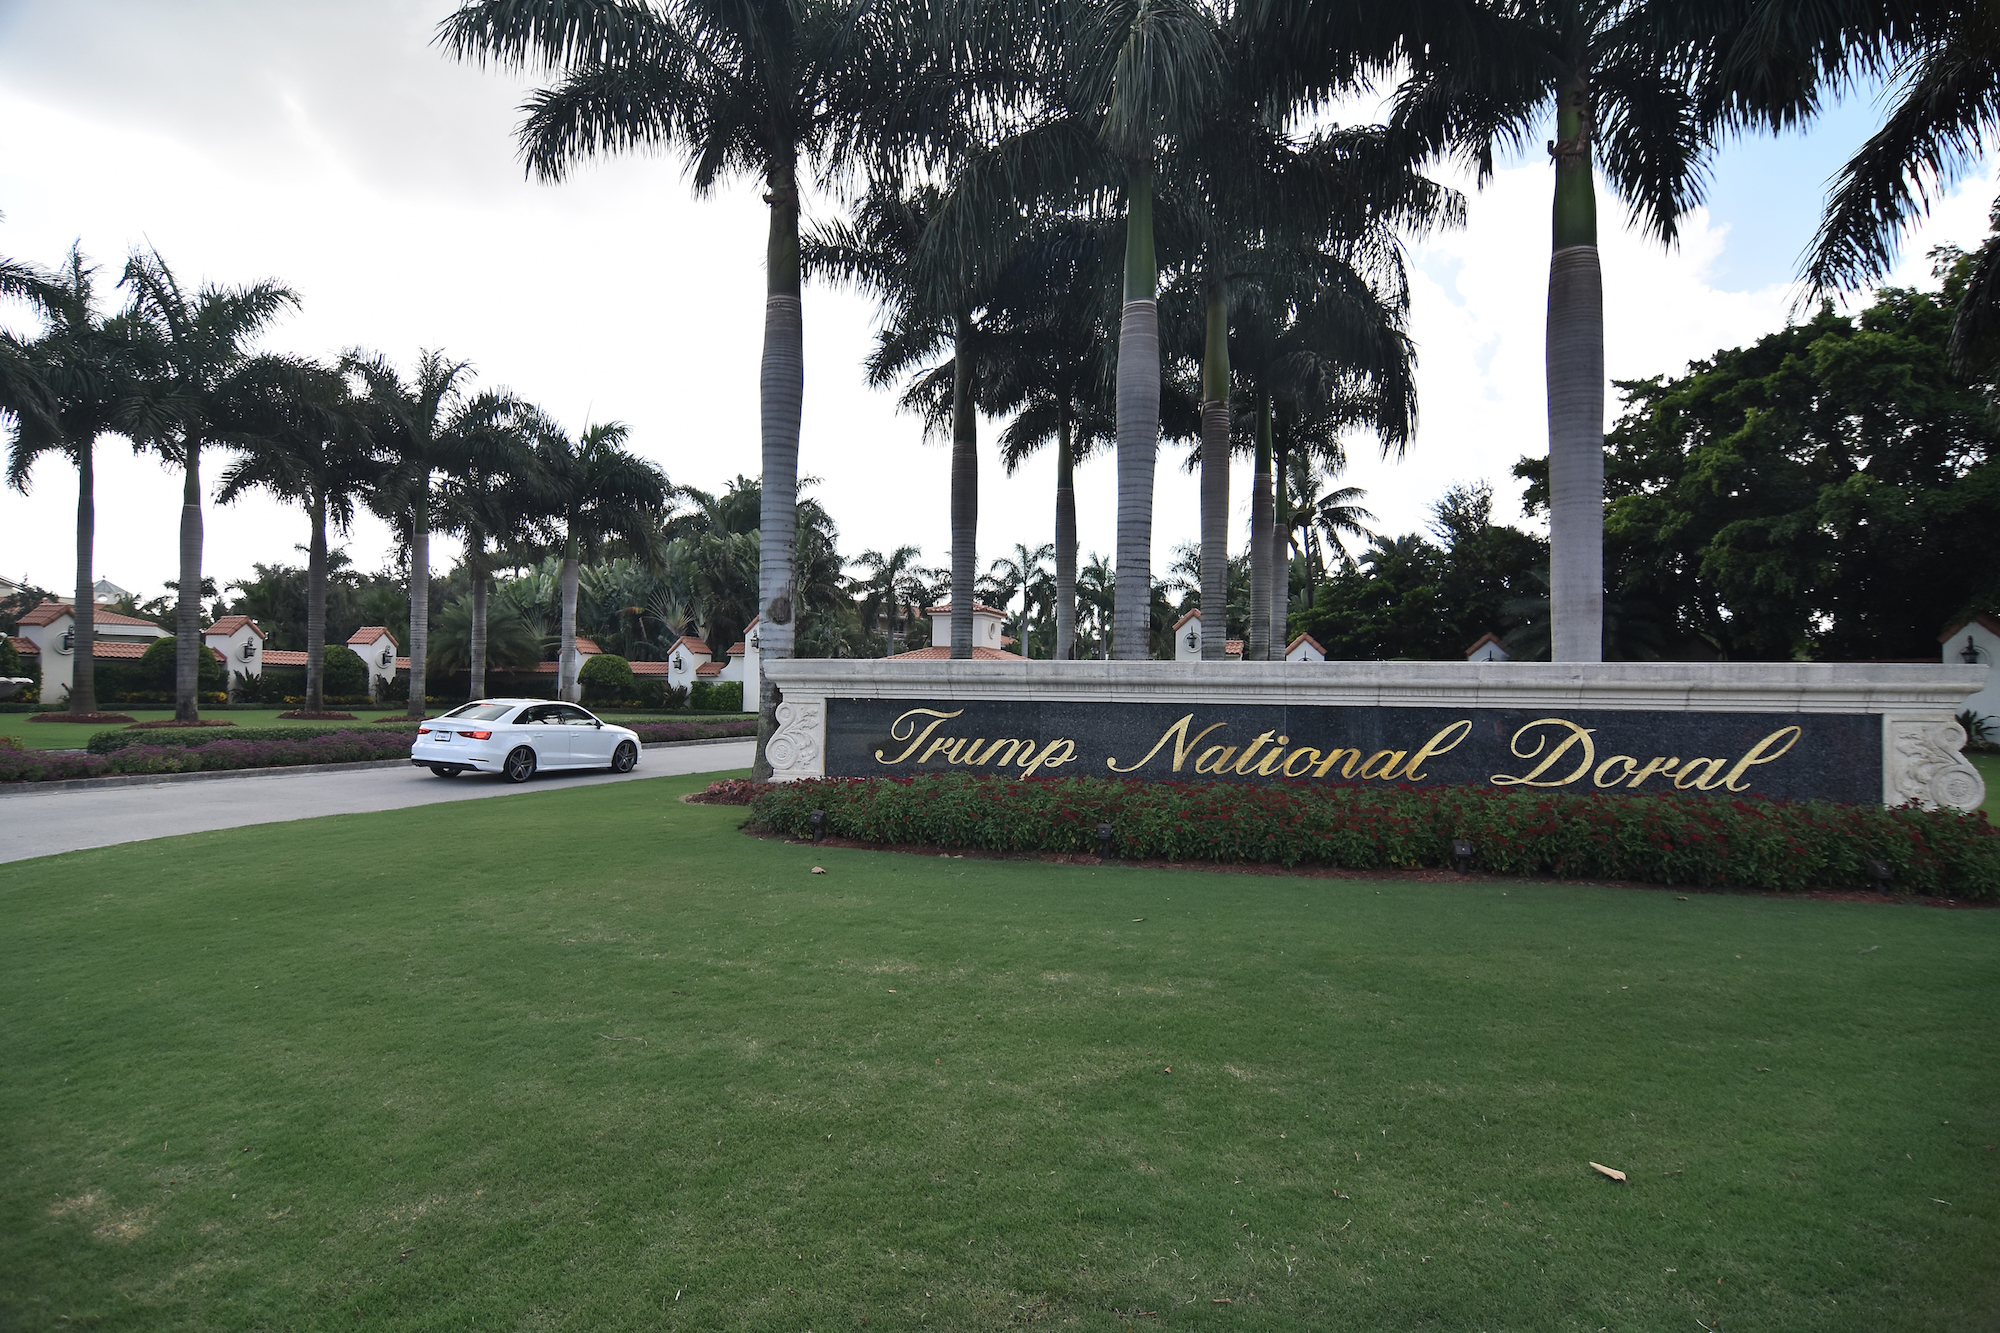 Trong giai đoạn từ tháng 1/2016 đến cuối mùa xuân 2017, Tổng thống Trump thu nhập khoảng 594 triệu USD và giá trị tài sản ít nhất 1,4 tỷ USD. Trong đó, khoản thu lớn nhất đến từ khu nghỉ dưỡng sân golf Trump National Doral tại thành phố Miami, ước tính khoảng 115,9 triệu USD. Tổng thống Mỹ cũng liệt kê các khoản nợ của mình tính đến giữa năm 2017 vào khoảng 315,6 triệu USD. Trong ảnh (tư liệu): Quang cảnh khu nghỉ dưỡng sân golf Trump National Doral ở Miami, Florida ngày 26/7/2016. (Ảnh: AFP/ TTXVN)